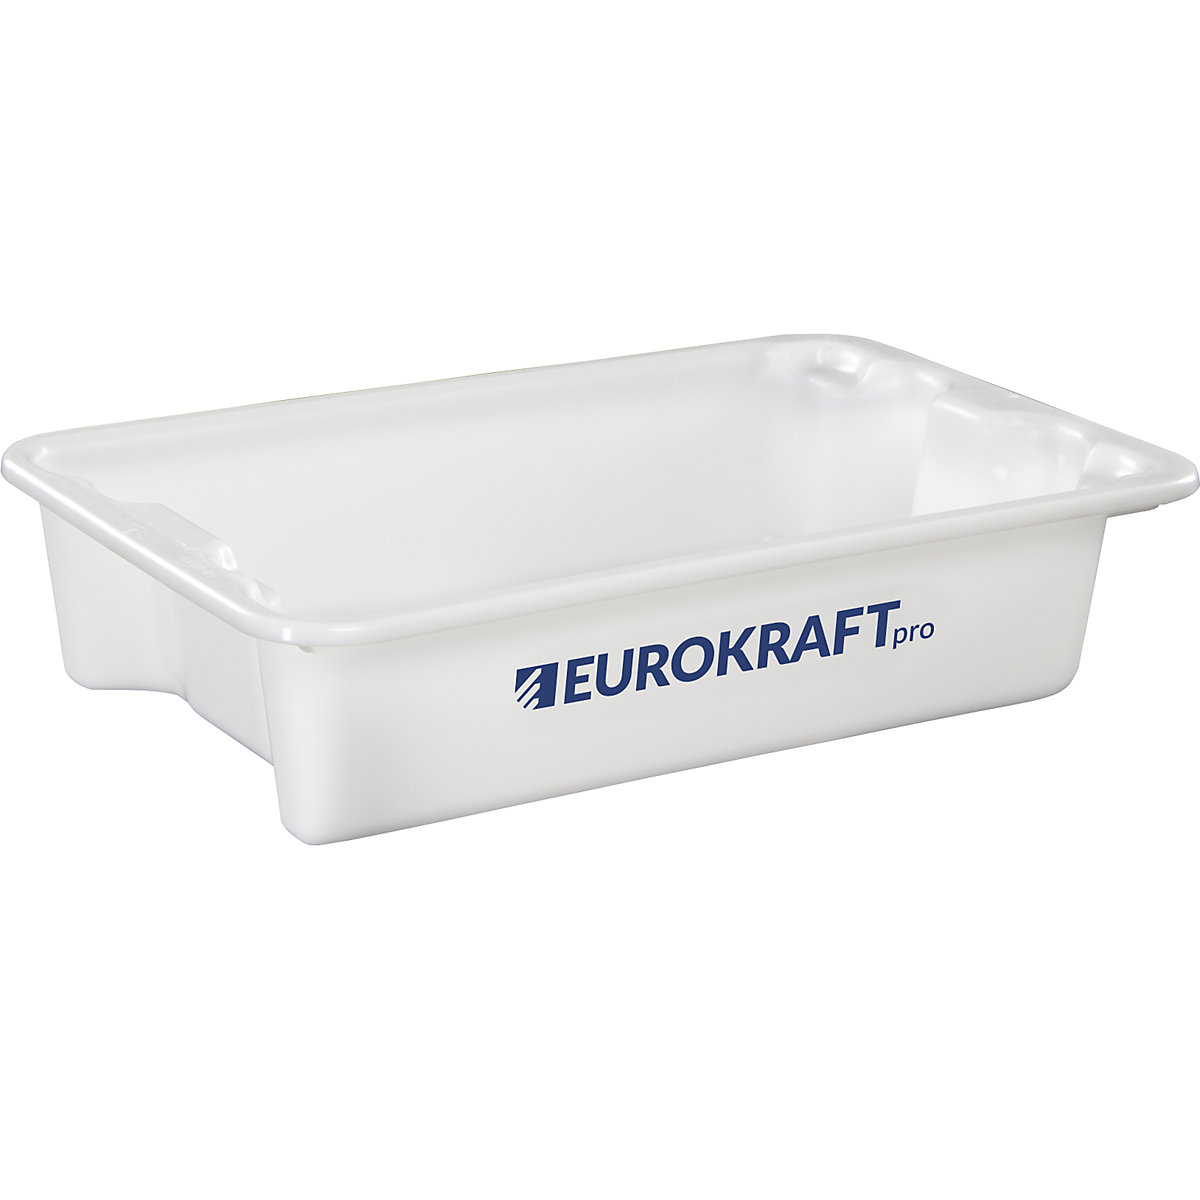 EUROKRAFTpro – Otočná stohovací nádoba z polypropylenu vhodného pro potraviny, obsah 18 litrů, bal.j. 3 ks, stěny a dno plné, přírodní